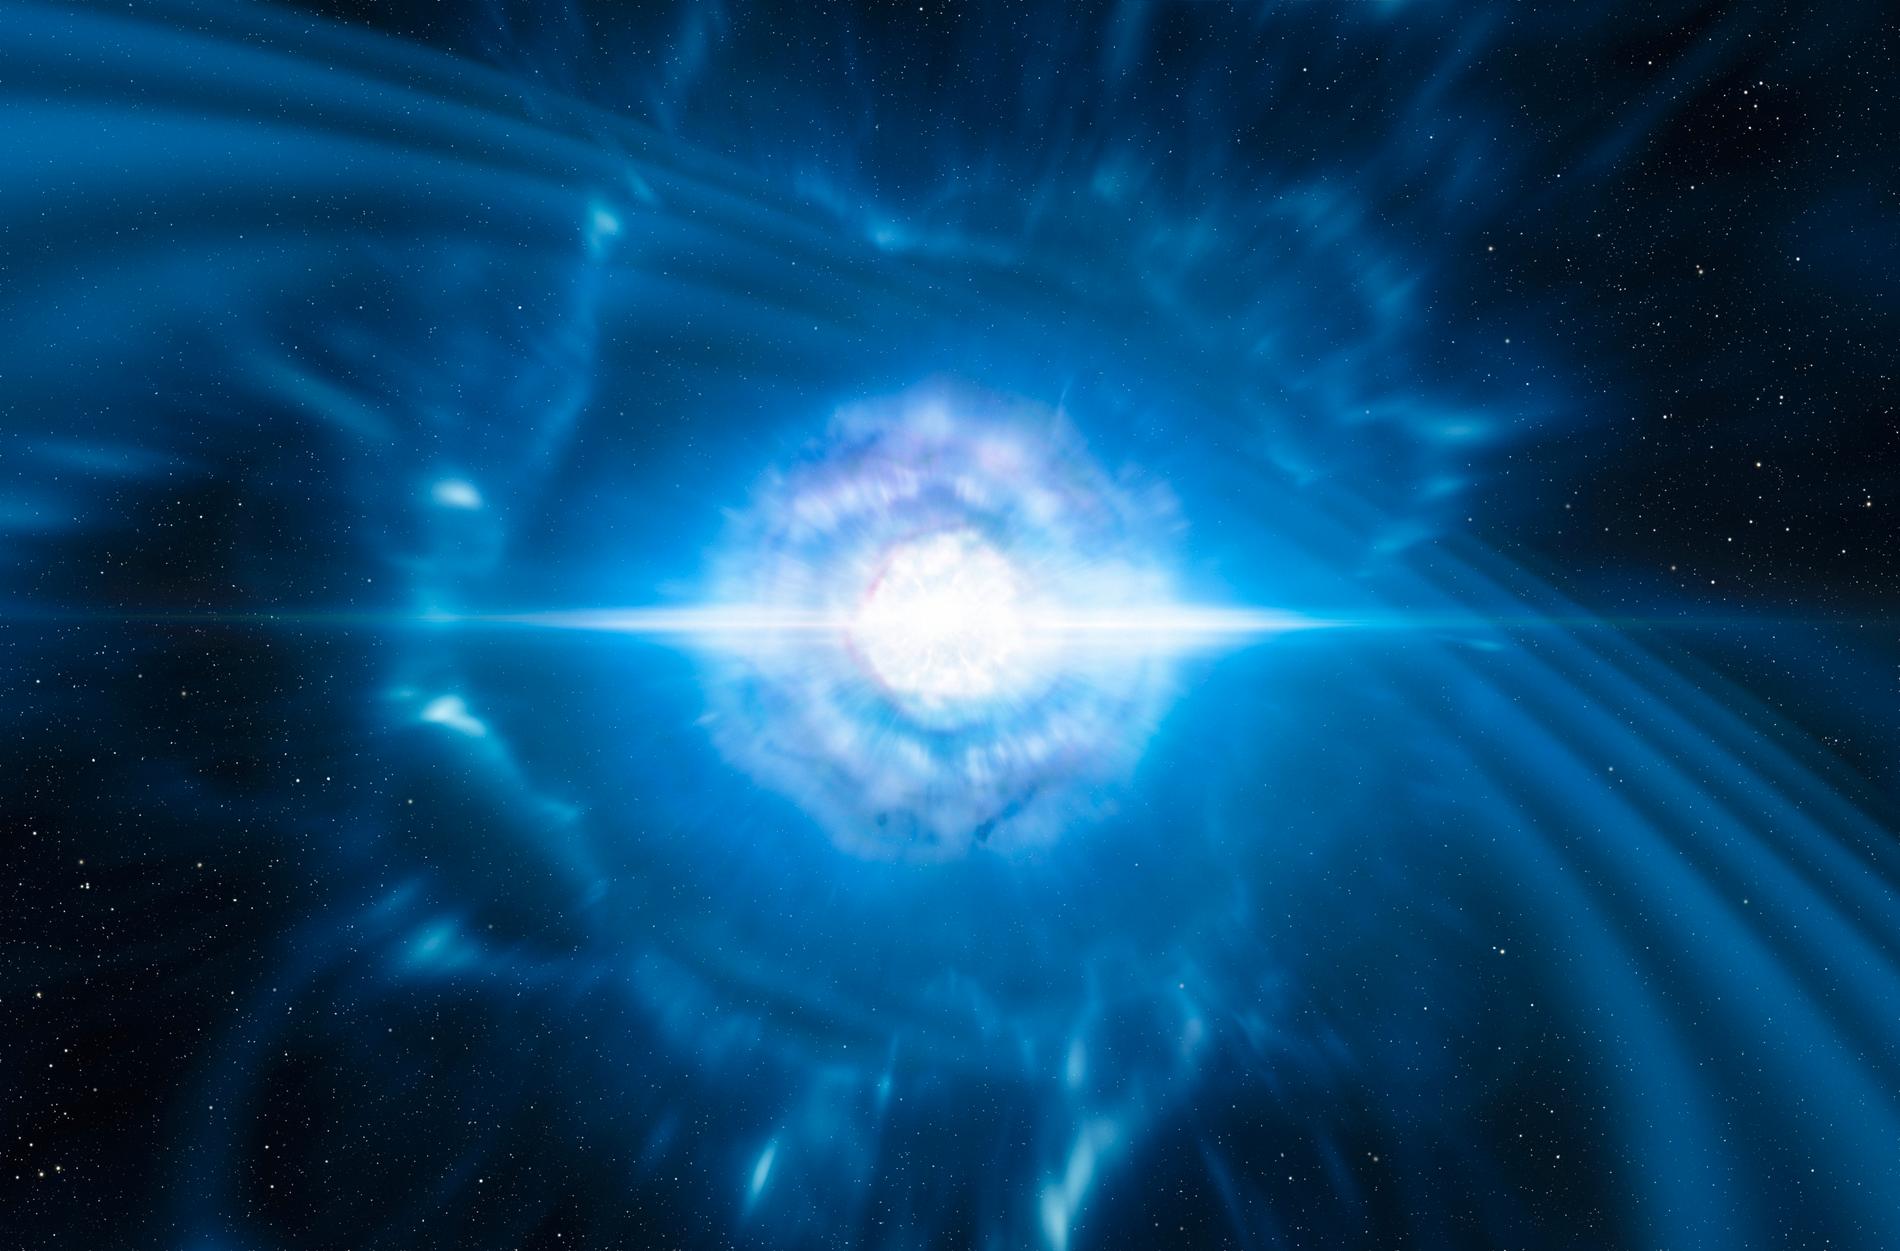 Så här föreställer sig ESO:s rymdkonstnärer sammansmältningen av två pyttesmå, men mycket täta neutronstjärnor. Här visas ögonblicket då sammanslagningen avslutas med en explosion, en så kallad kilonova. I dessa explosioner skapas större delen av de tyngsta grundämnen, som guld och platina, som finns i universum. Arkivbild.